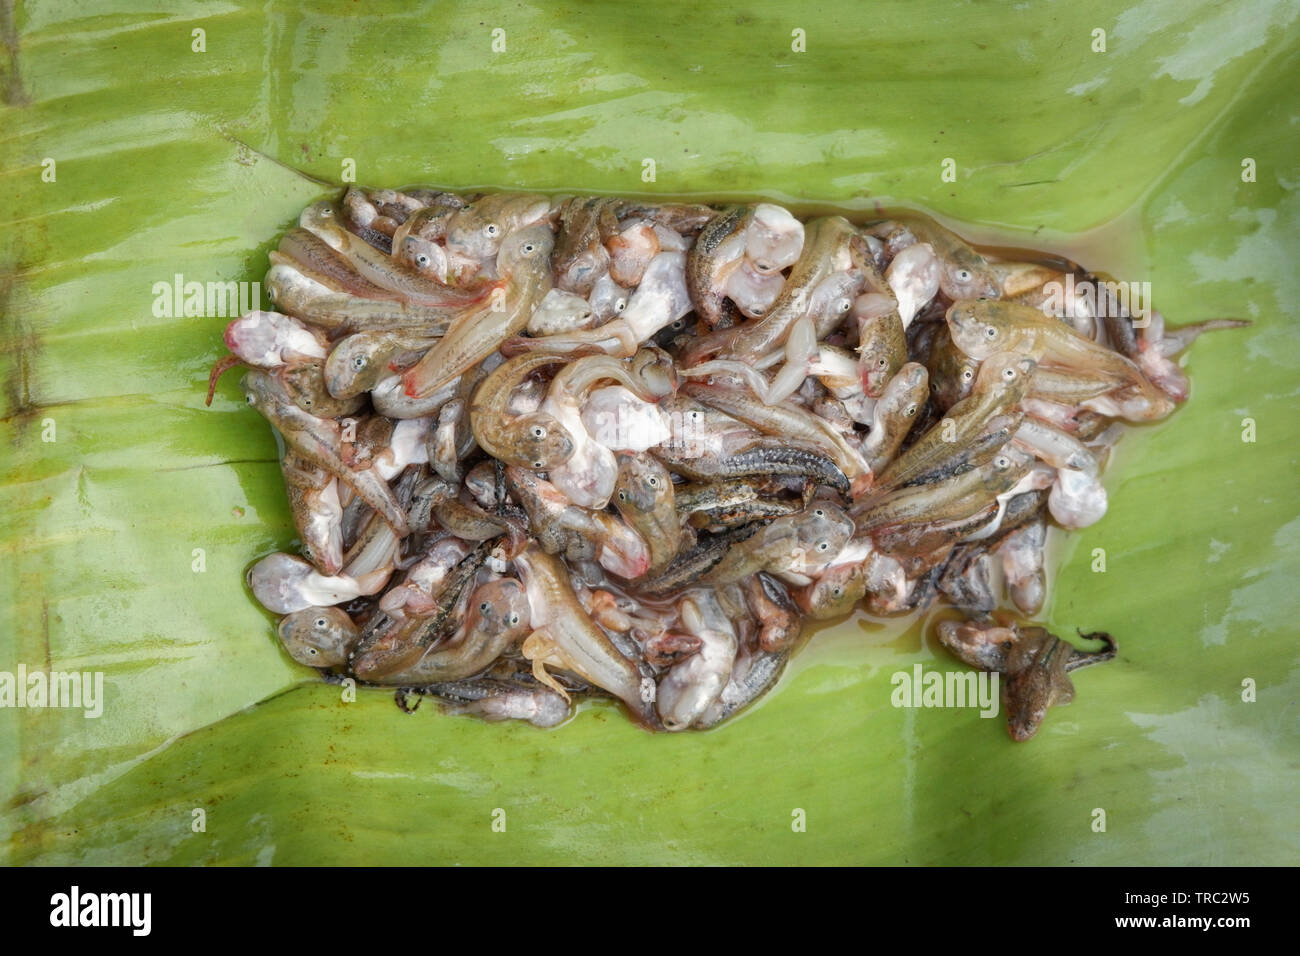 Les têtards de grenouille bébé sur des feuilles de banane pour faire cuire des aliments dans les pays d'Asie Banque D'Images